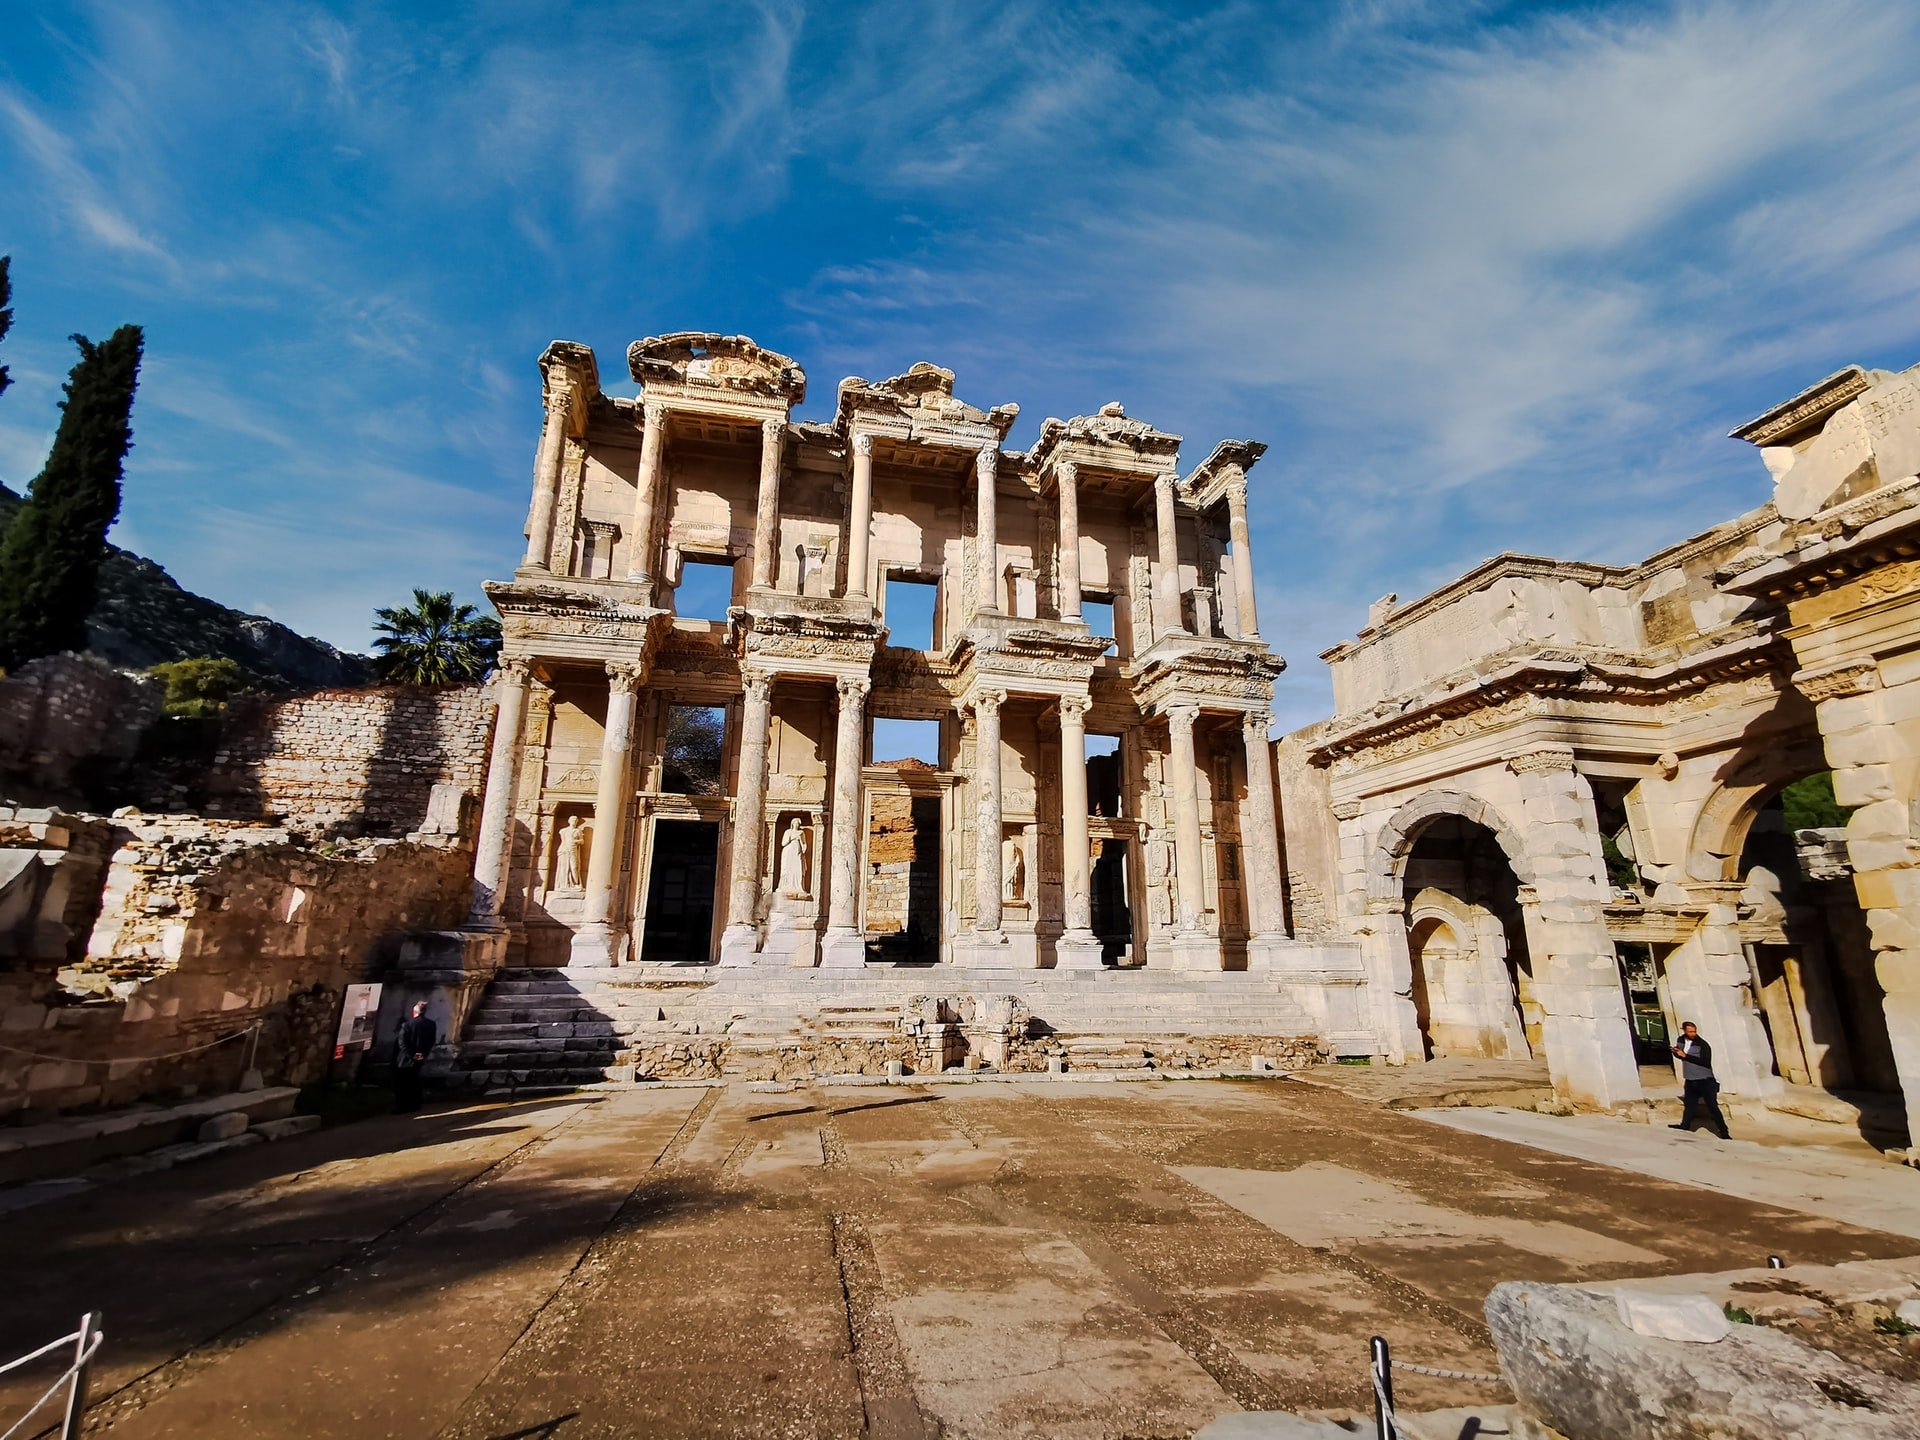 Această imagine arată impresionanta Biblioteca Celsus din Efes, unul dintre cele mai bune situri istorice din Turcia.